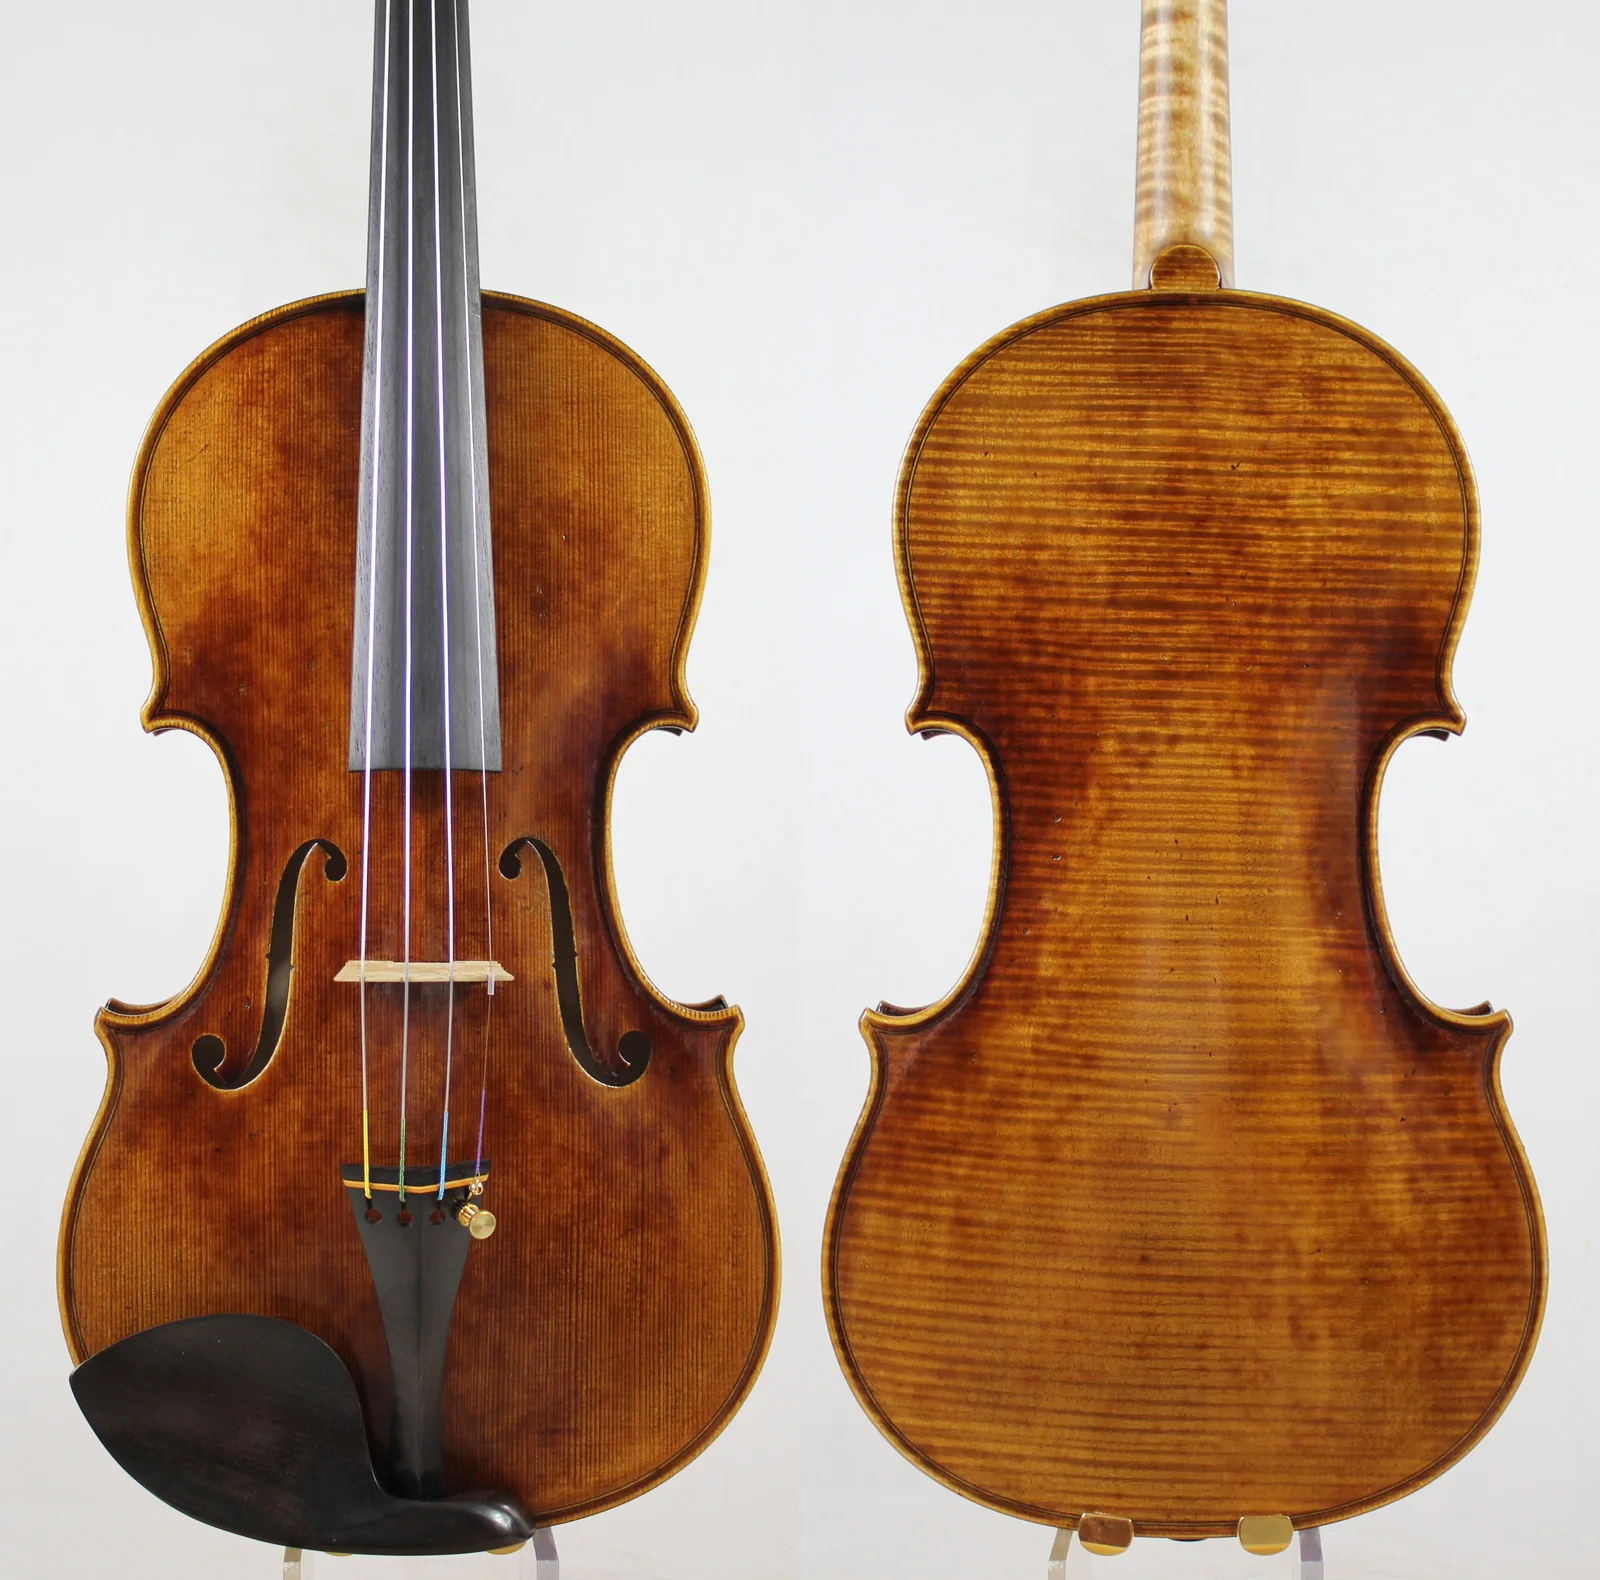 Мастер скрипки! Европейское дерево! Экземпляр Antonio Stradivari! Сильный и глубокий тон!! Despiau мост! Доминантные 135B струны